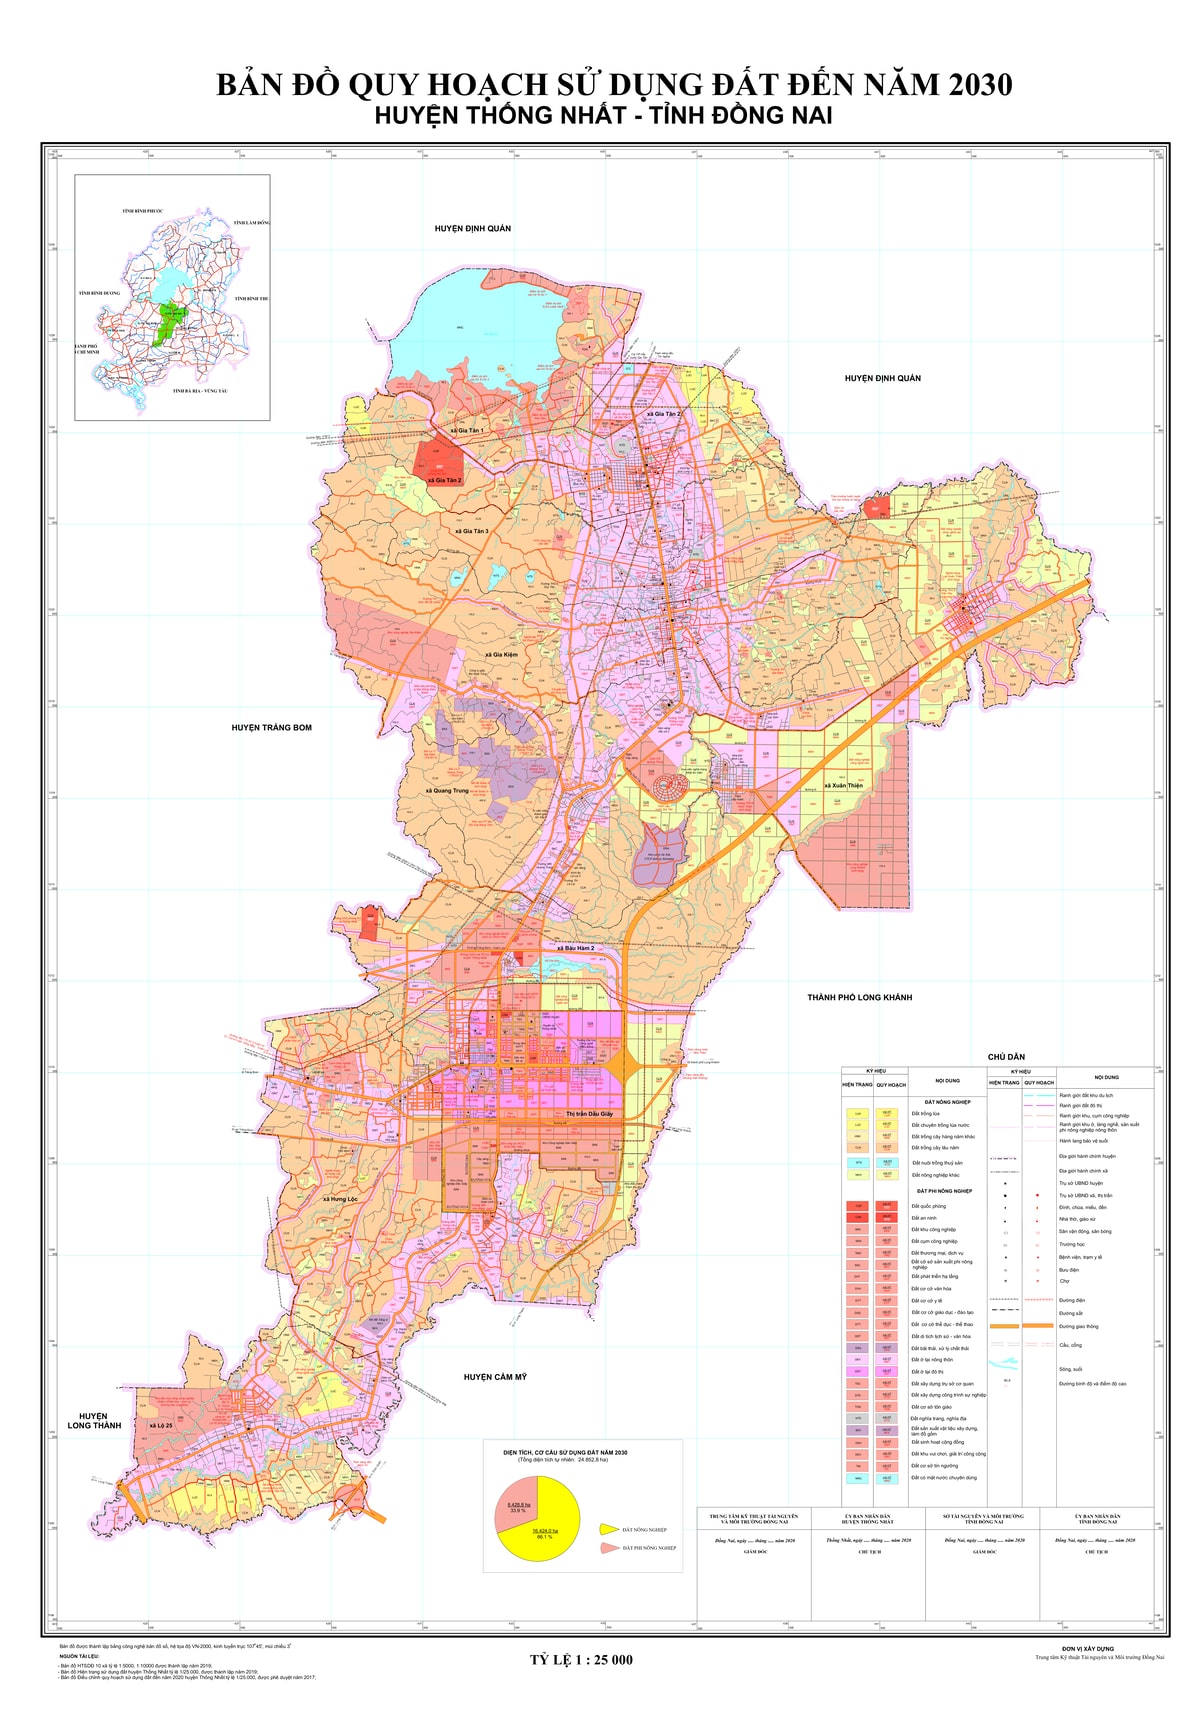 Bản đồ quy hoạch huyện Thống Nhất, tỉnh Đồng Nai đến năm 2030